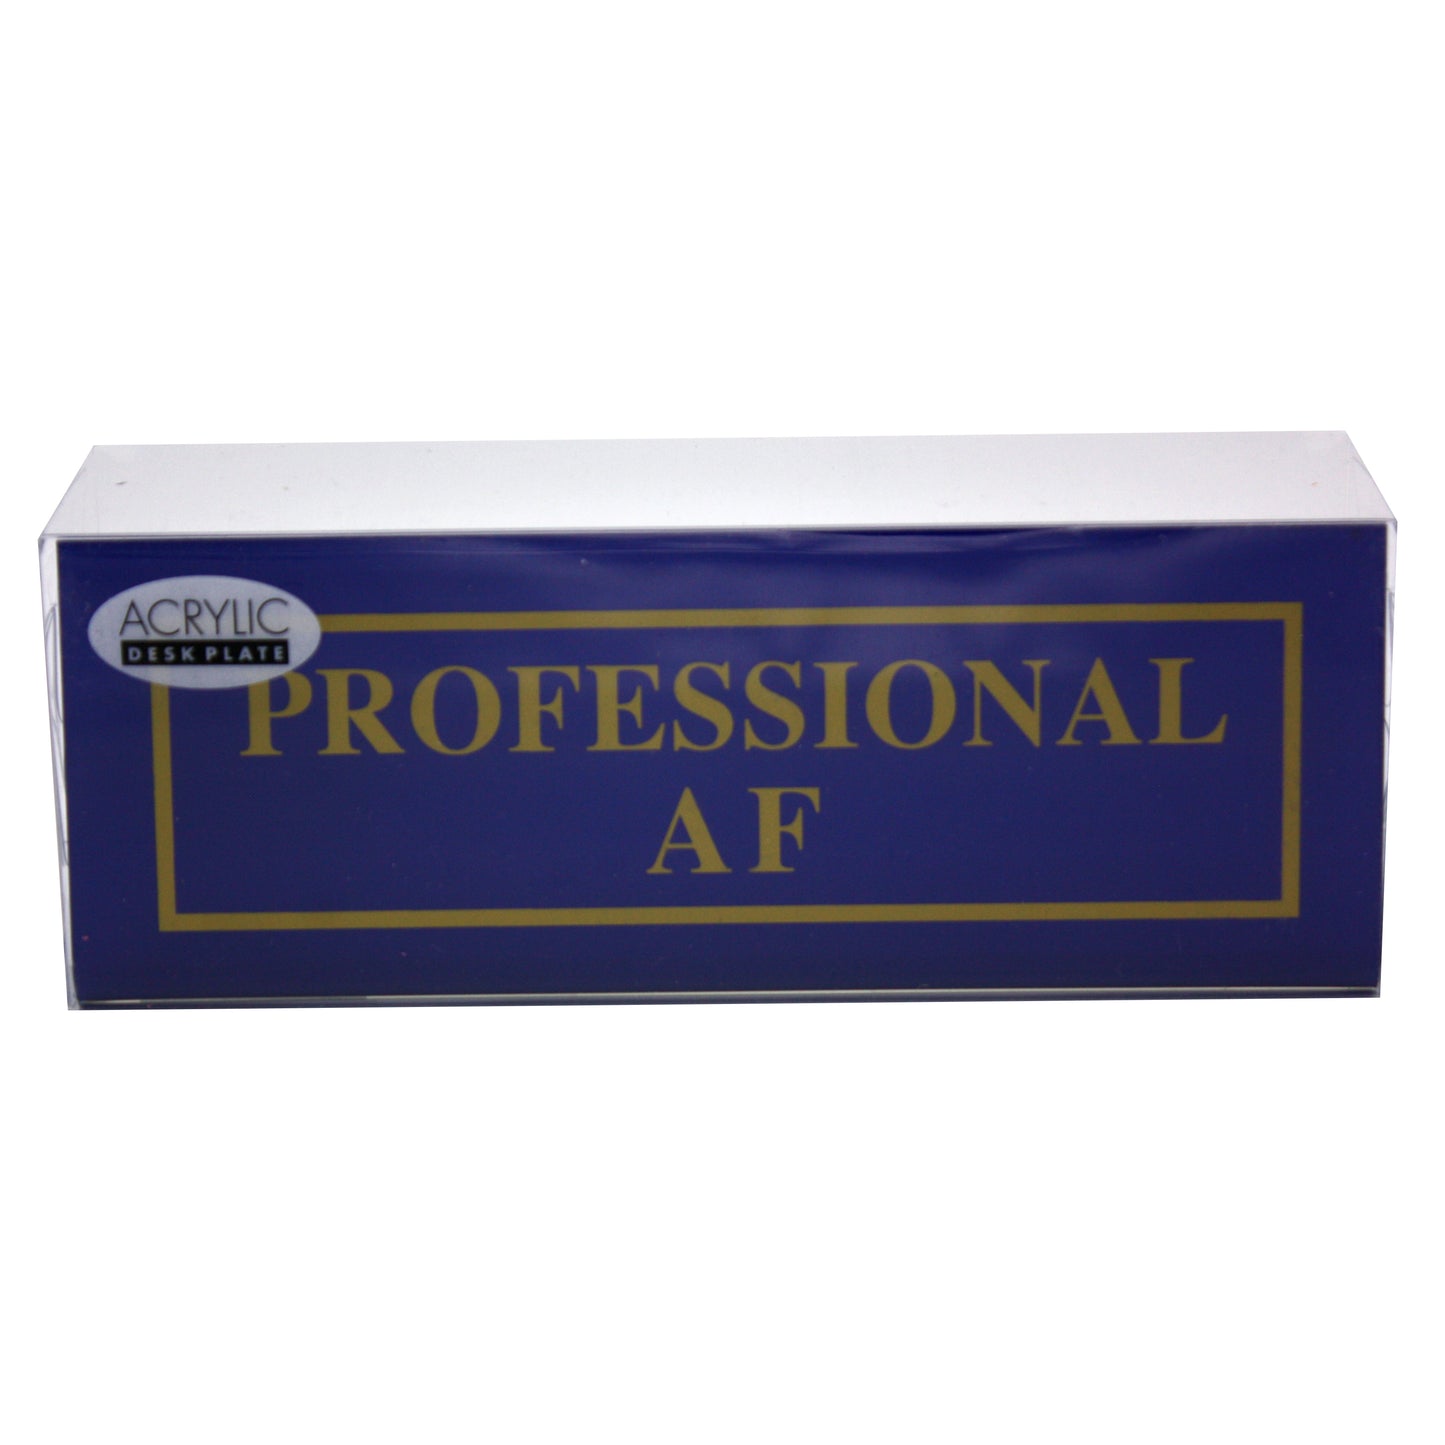 Professional AF Desk Plate